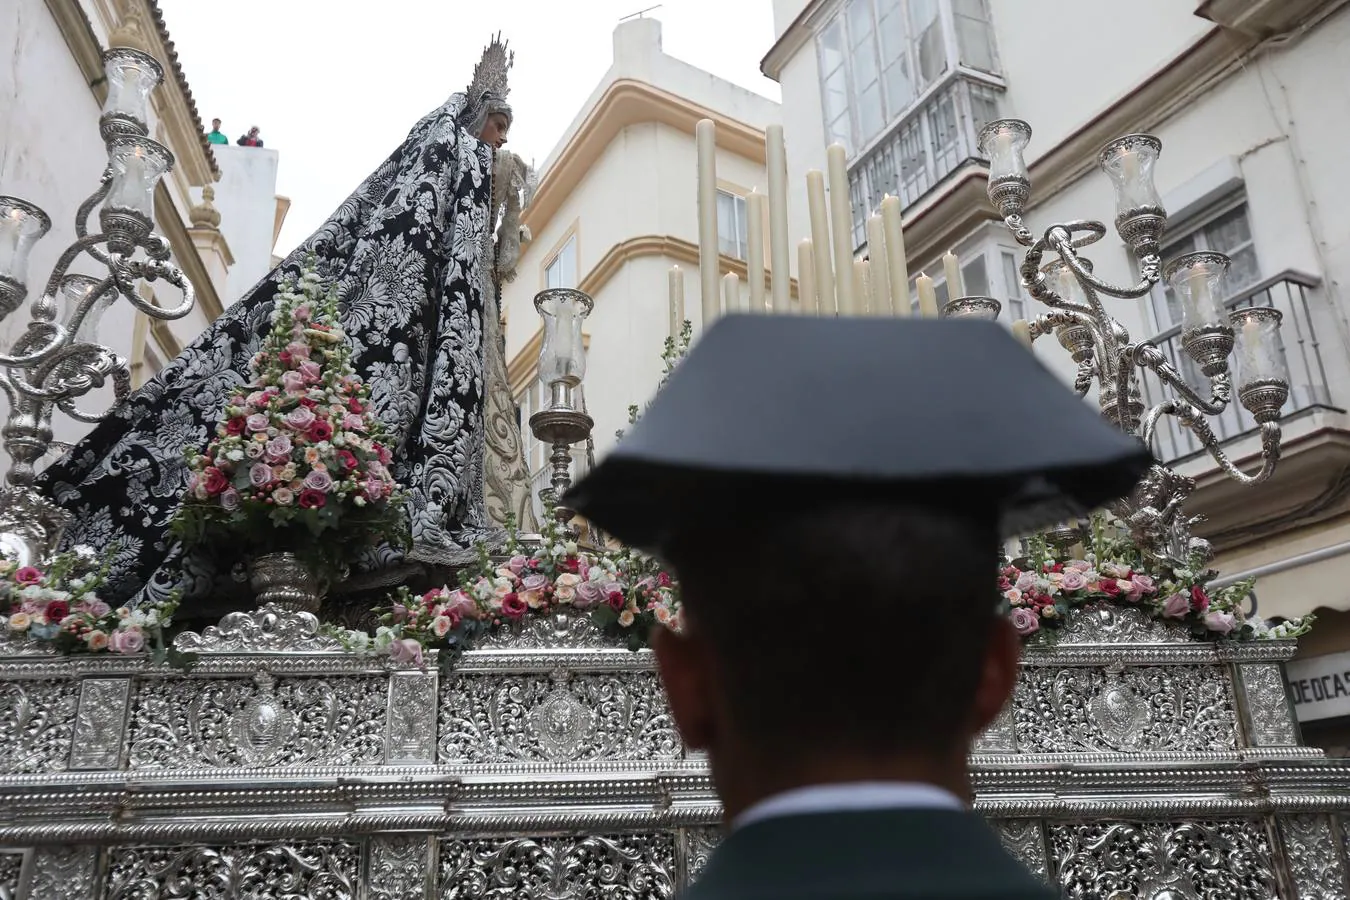 Fotos: El Caído, el Martes Santo en Cádiz